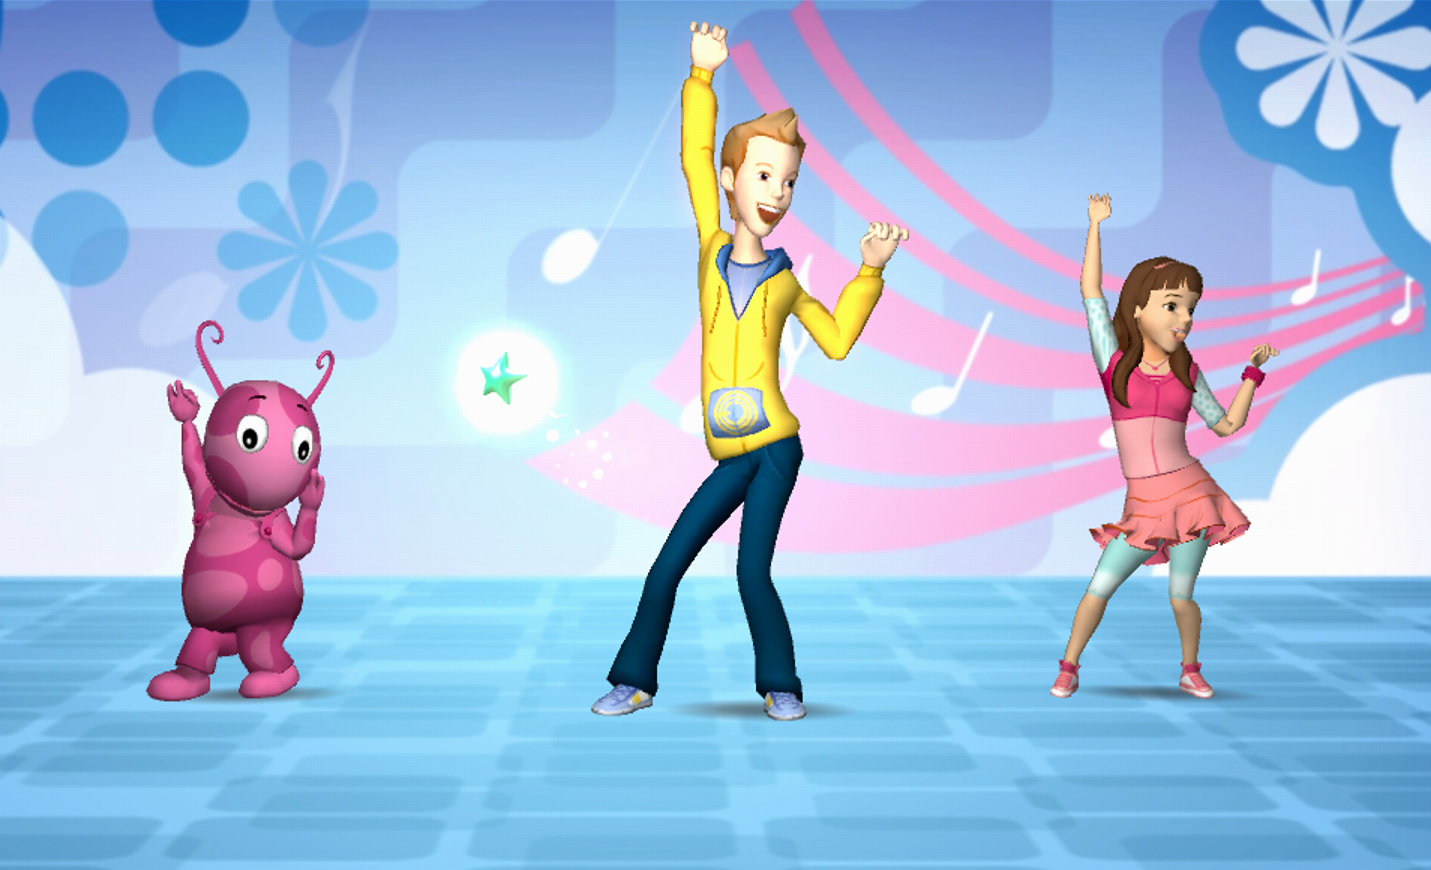 Включи плясать. Nickelodeon Dance Xbox 360 игра. Никелодеон игры. Танцевальные игры для детей. Хореографические игры.